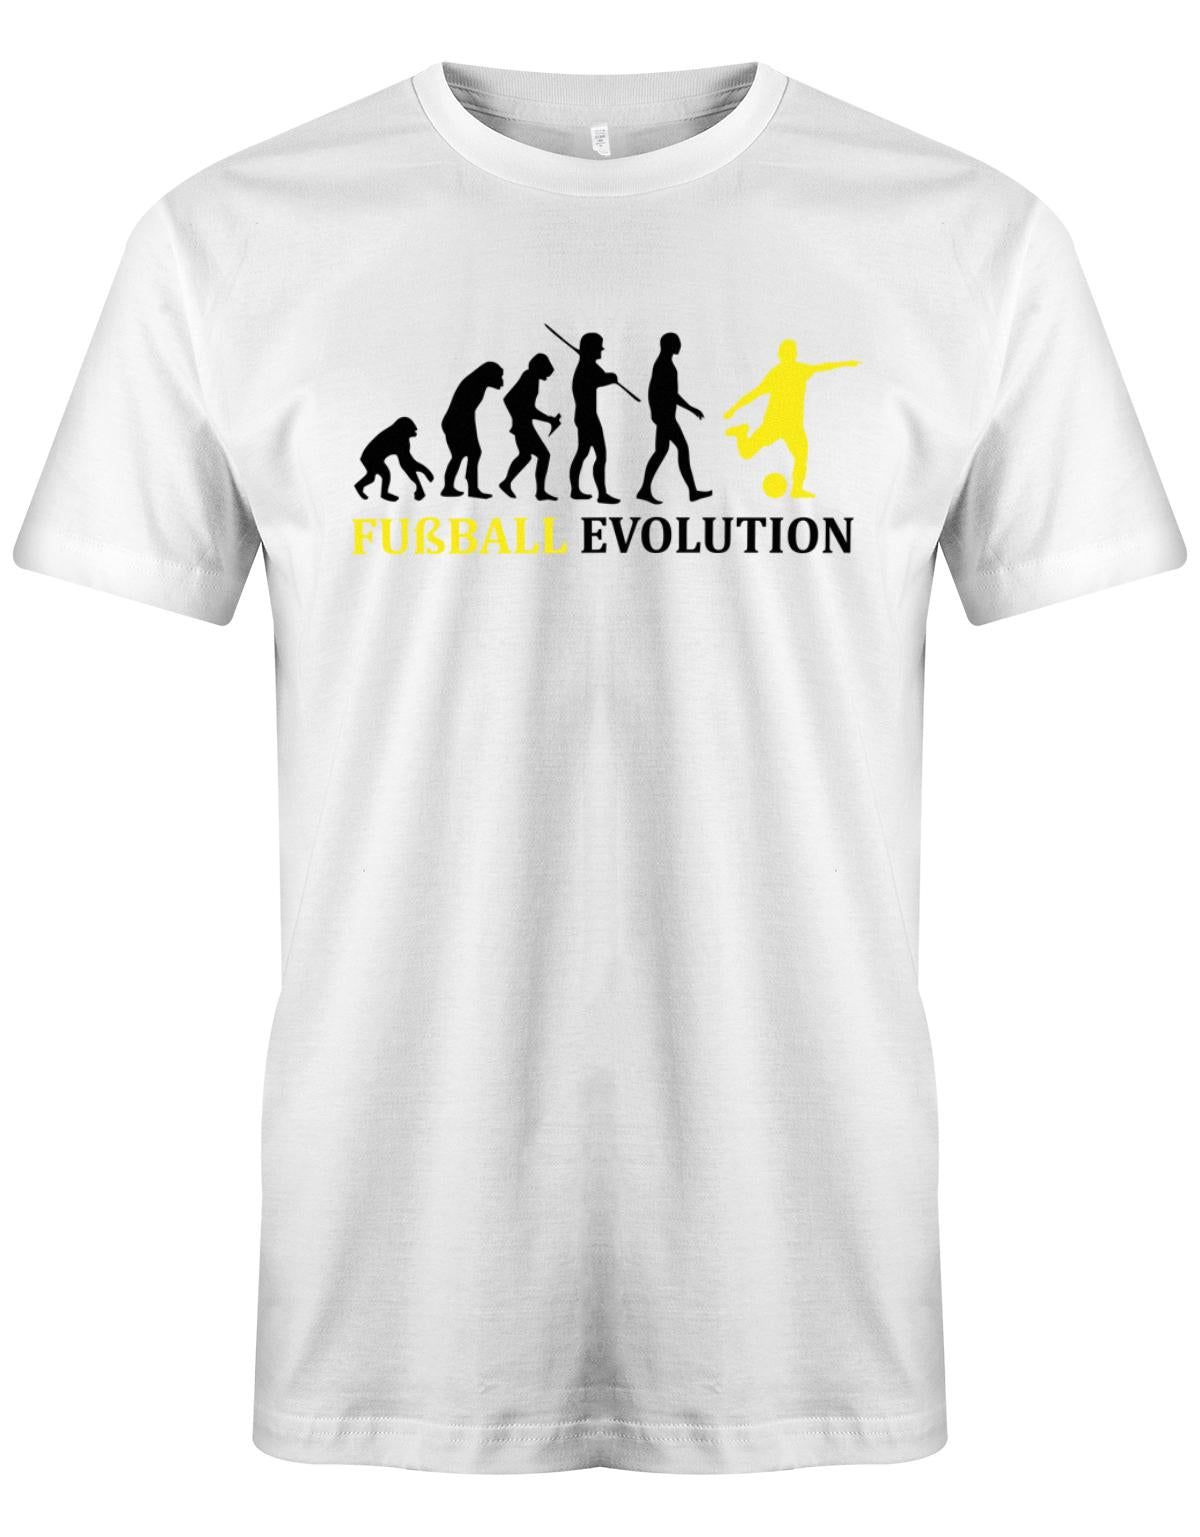 Fussball-Evolution-Herren-Shirt-Weiss-Gelb